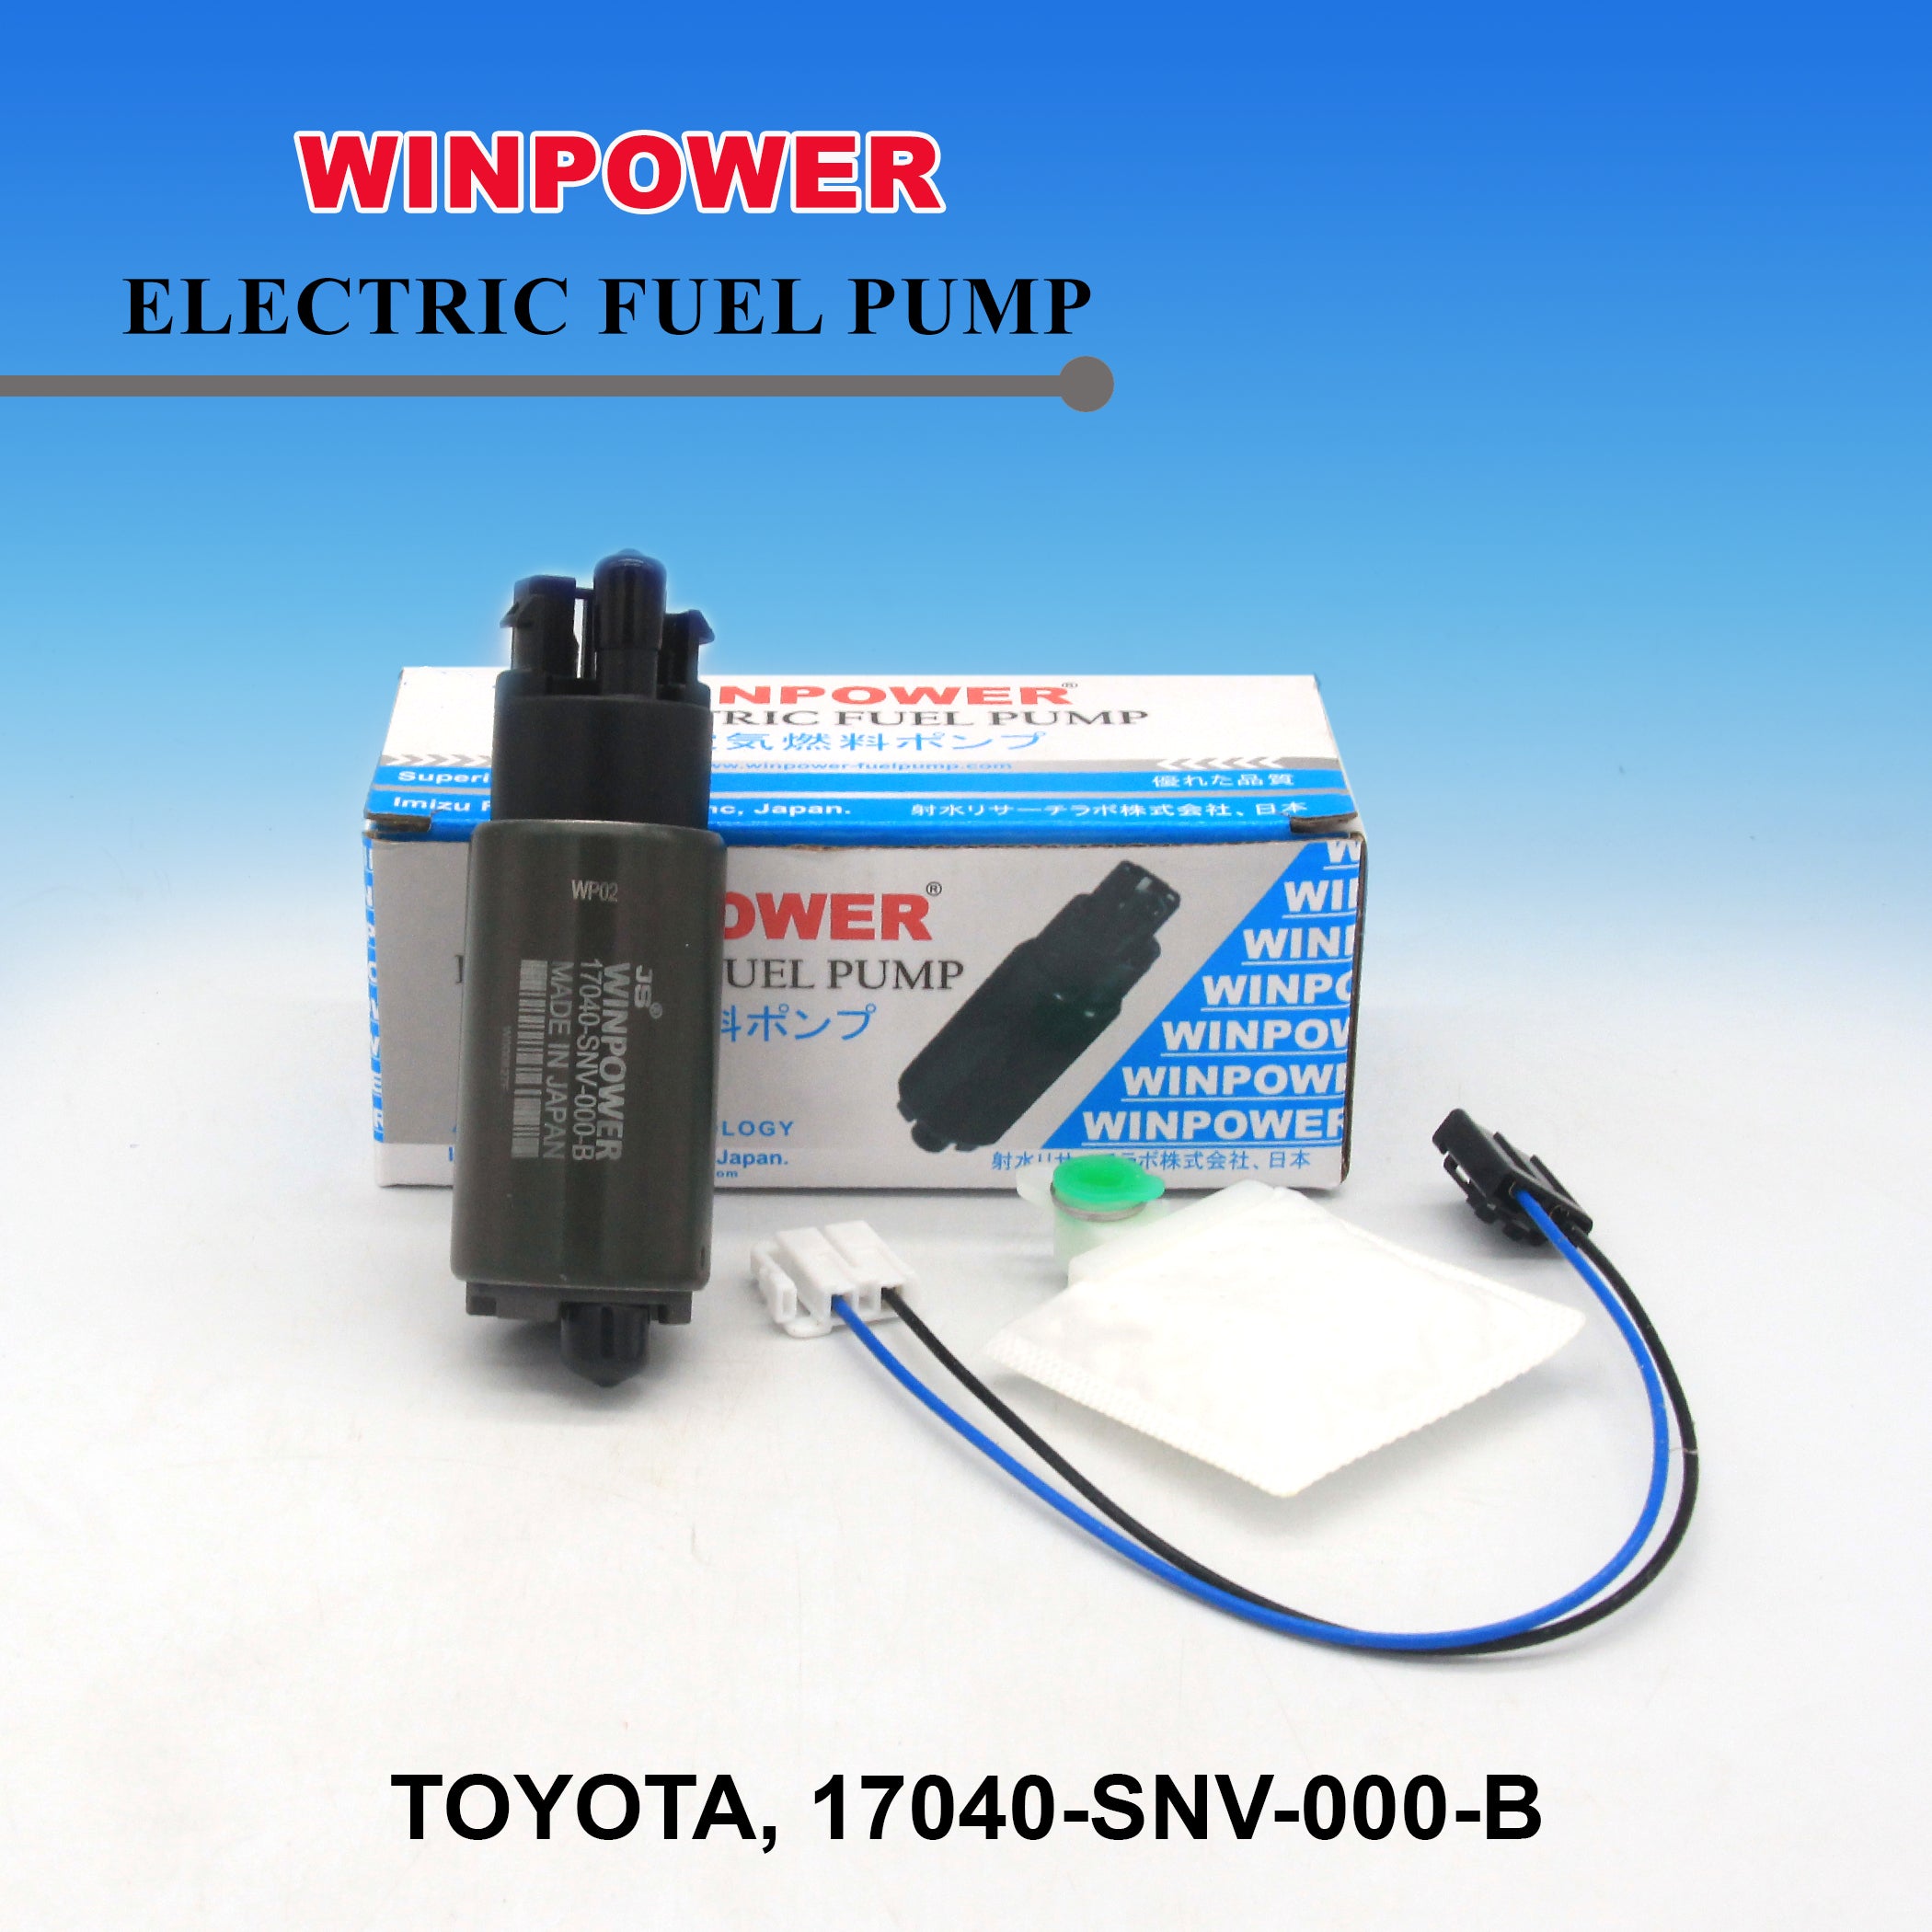 In-Tank Fuel Pump, WINPOWER, Big Pin, 17040-SNV-000-B, WF-3827 (005071)